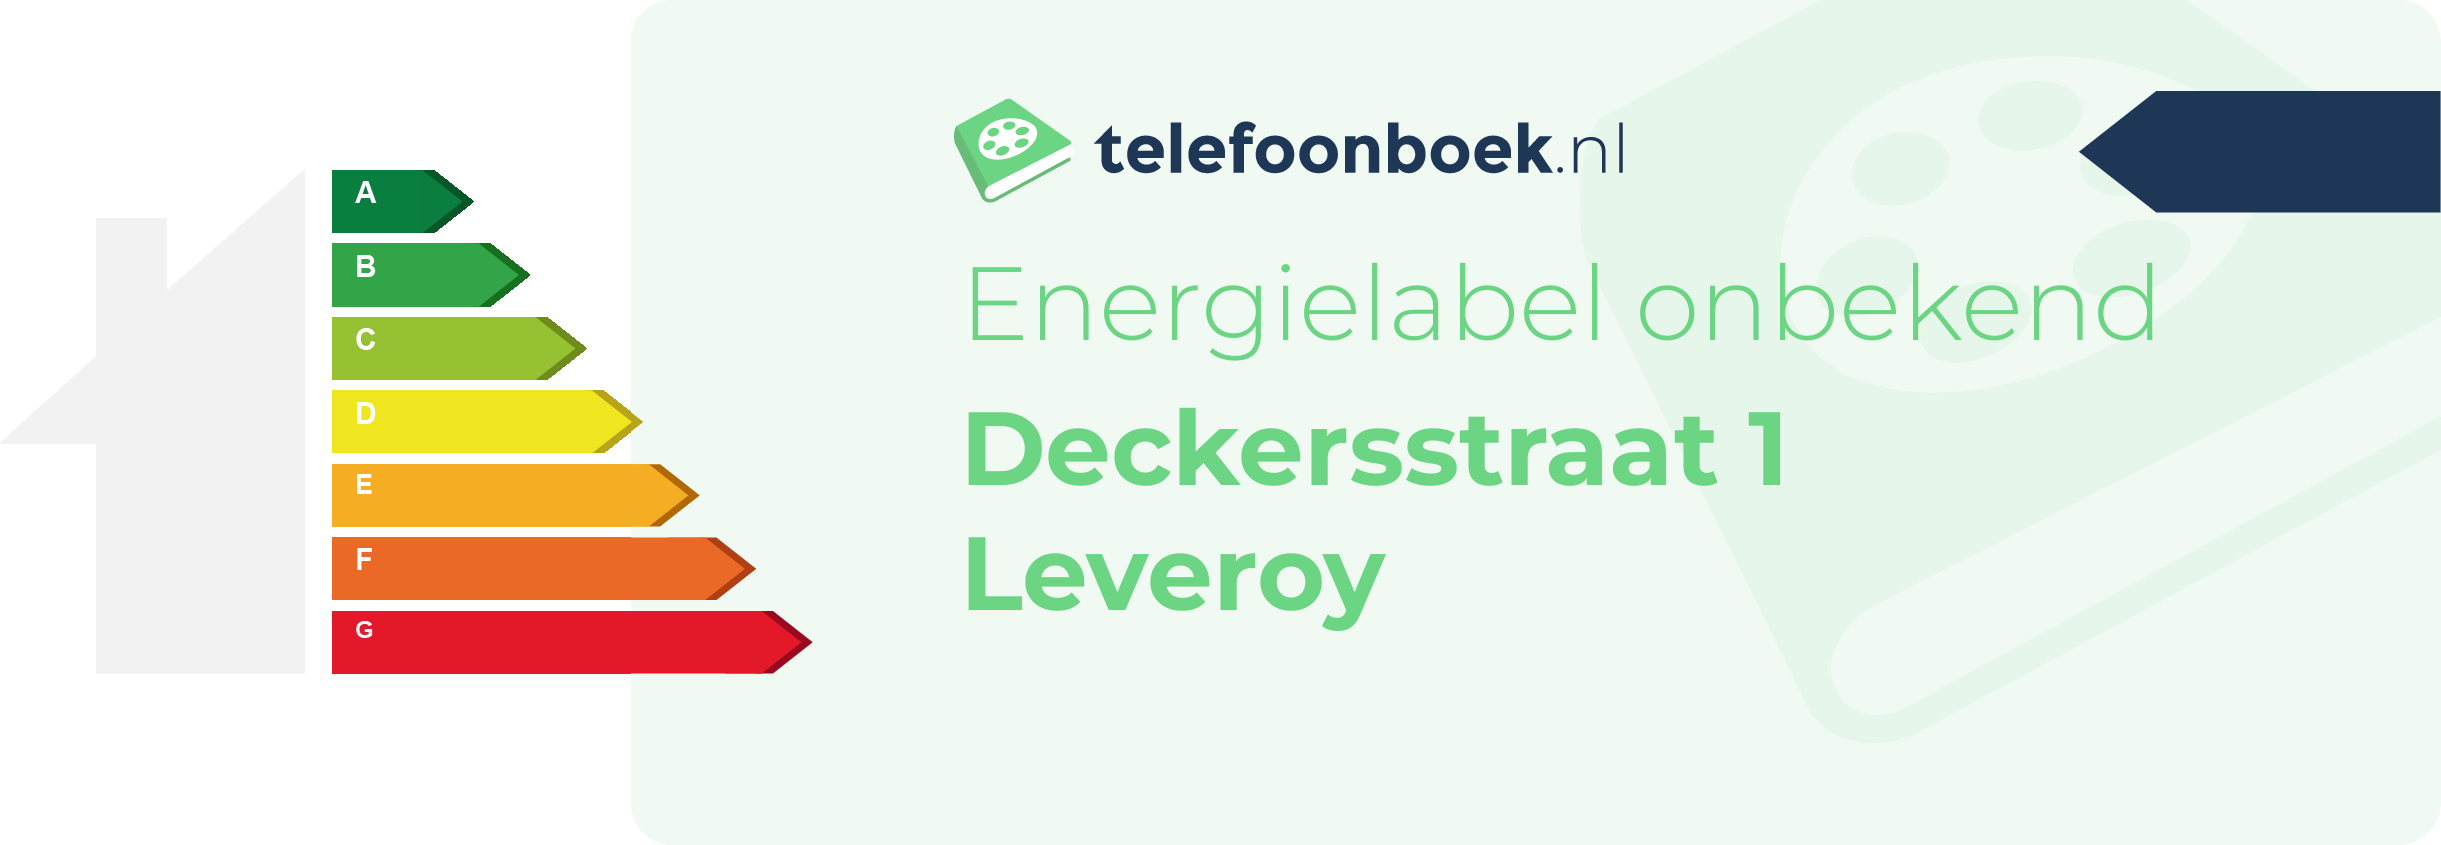 Energielabel Deckersstraat 1 Leveroy